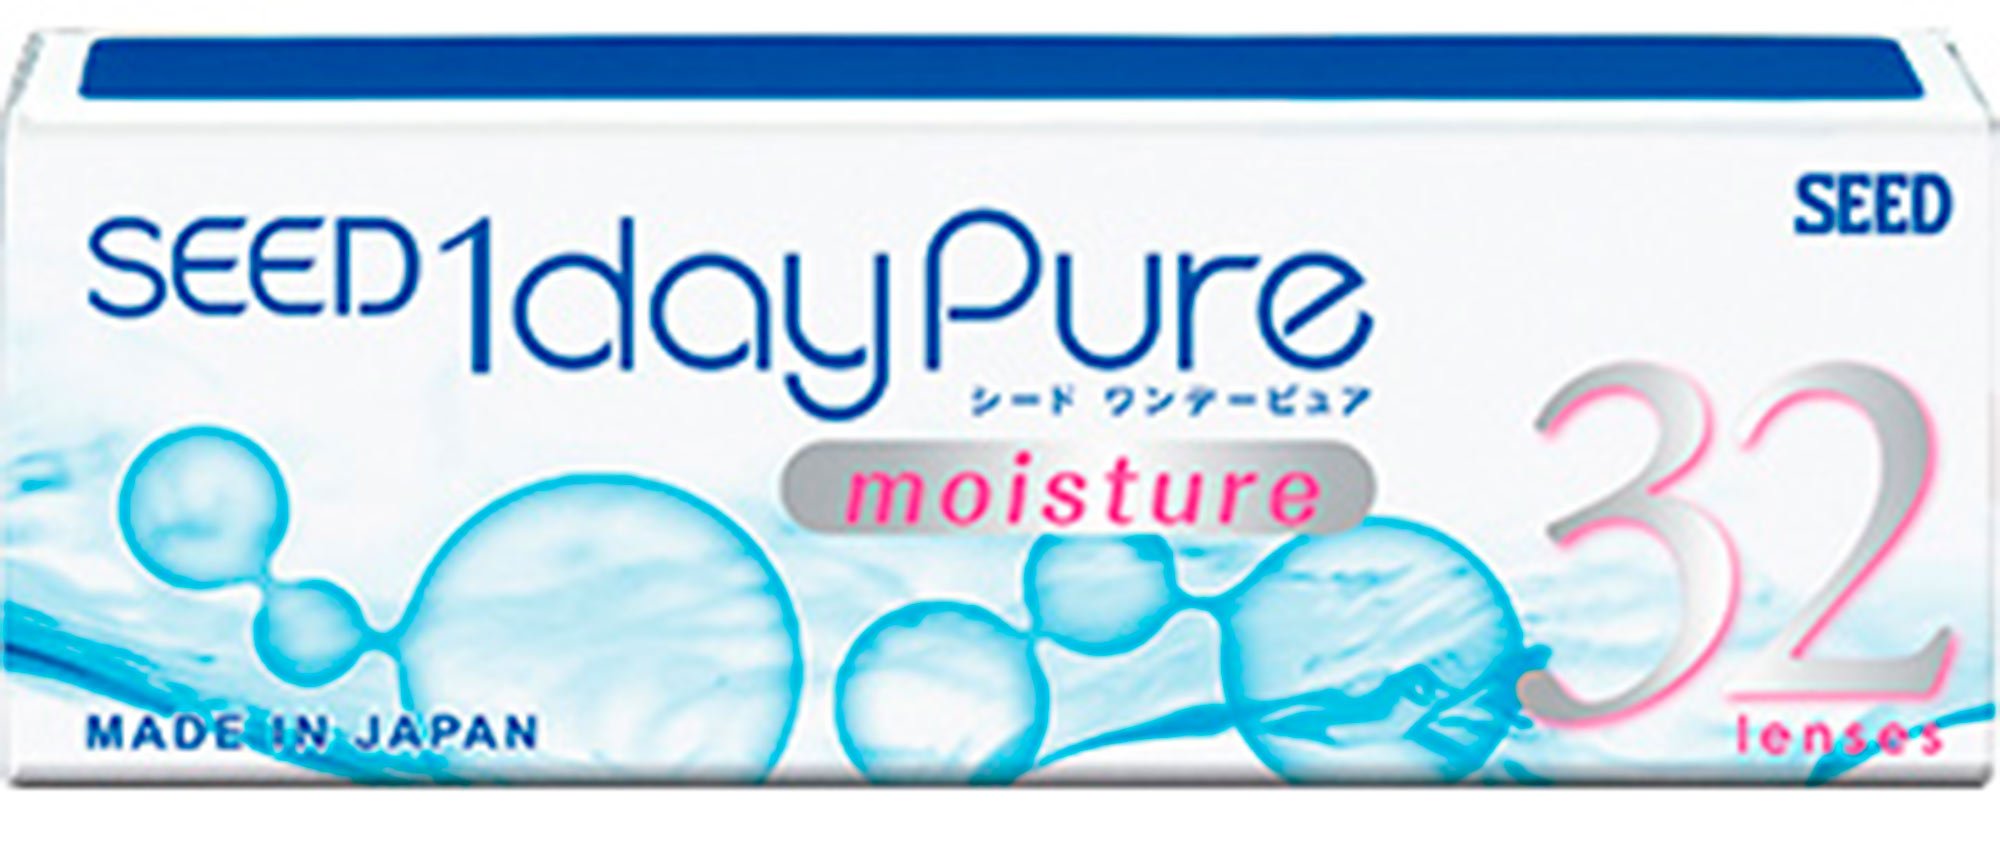 Контактные линзы SEED 1 day Pure moisture 32 линзы, R 8,8 SPH -4,25